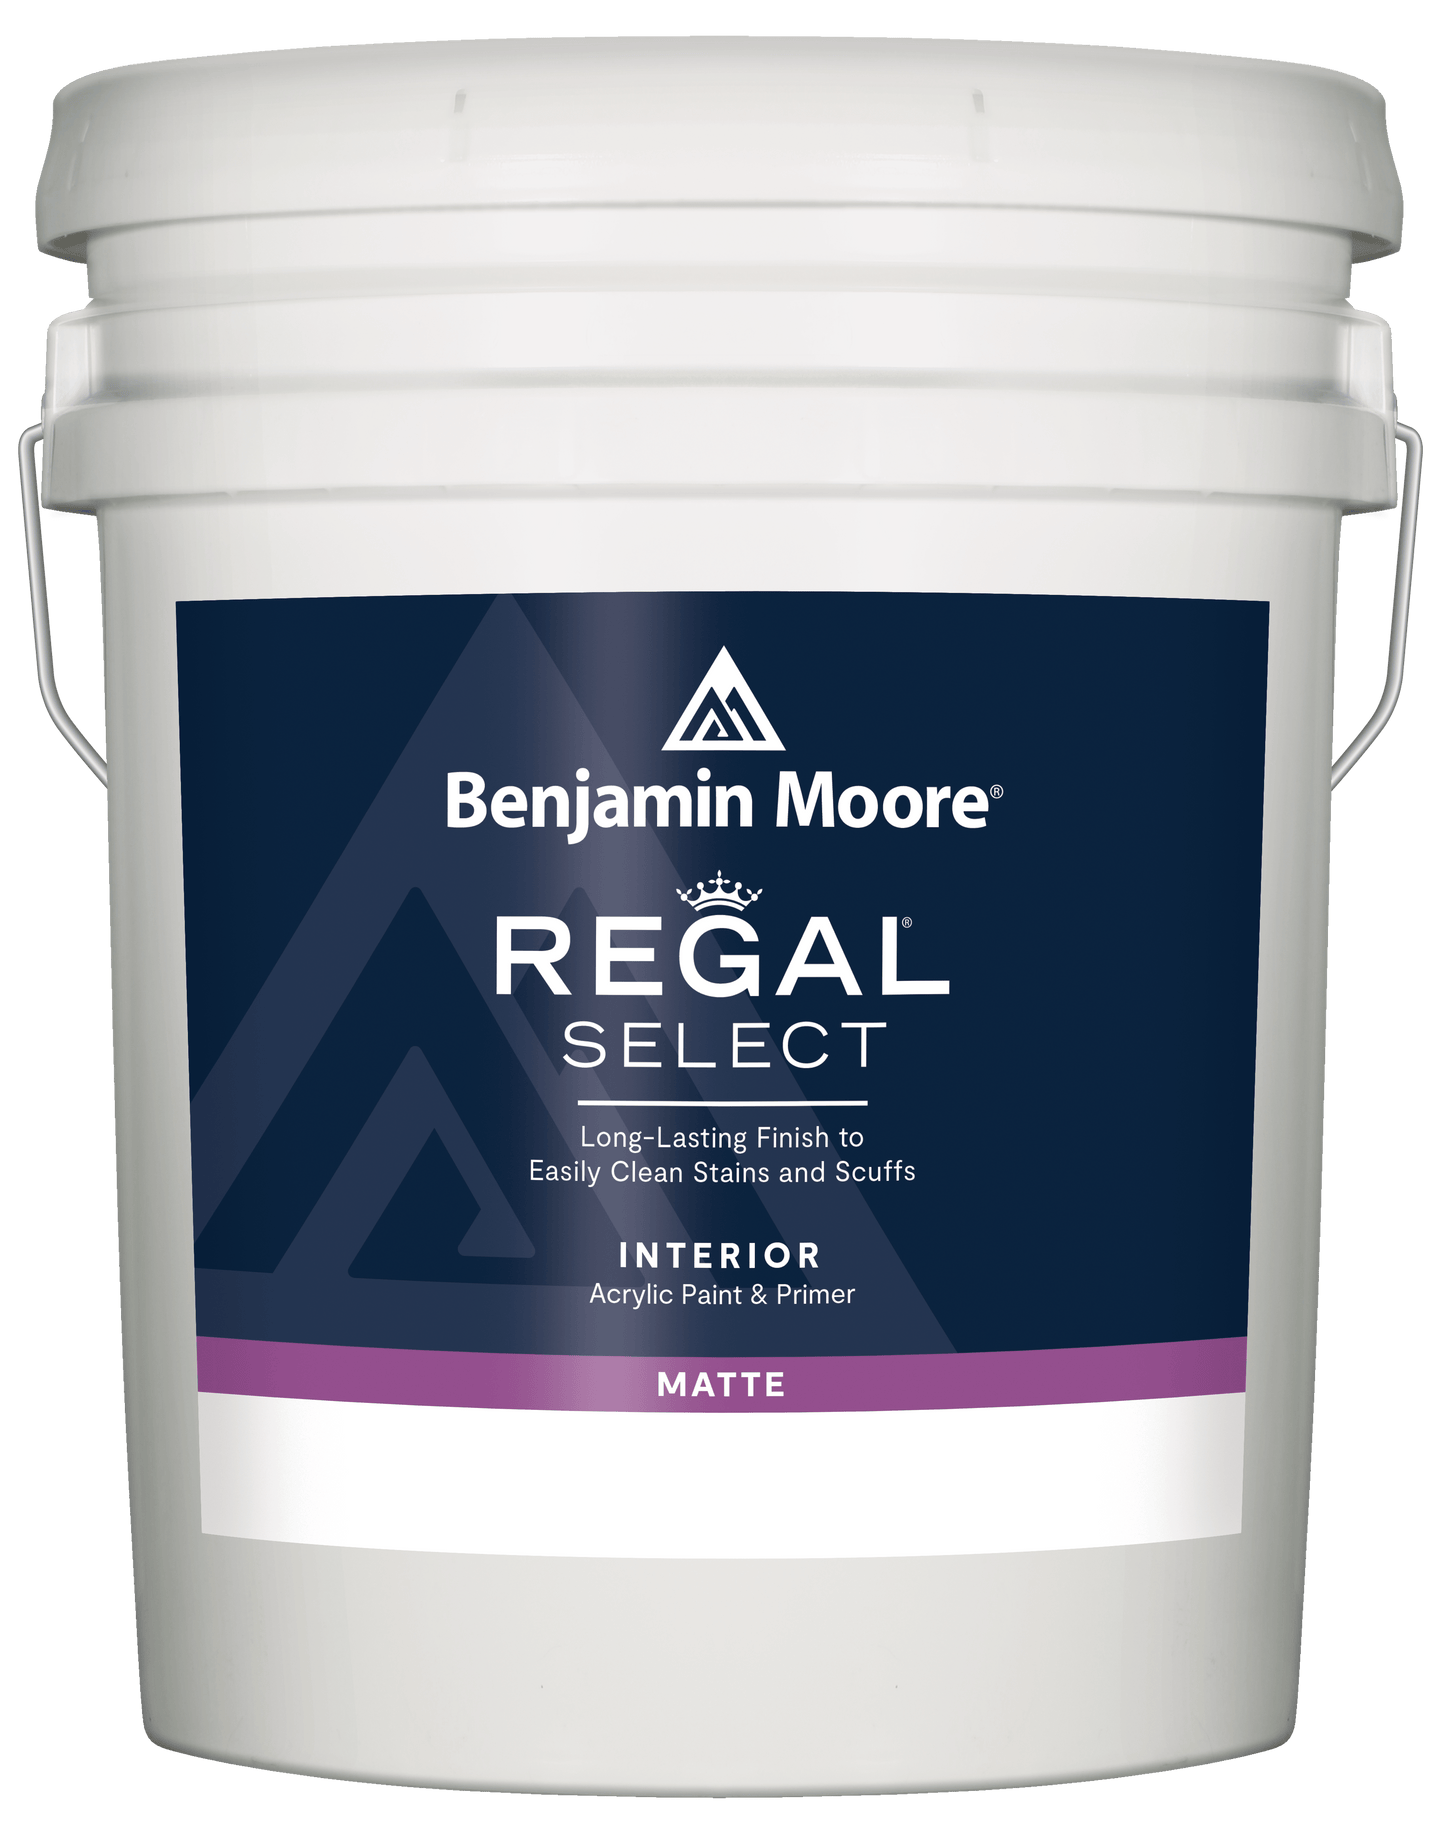 Benjamin Moore Regal Select - Rossi Paint Stores - Matte - 5 Gallon